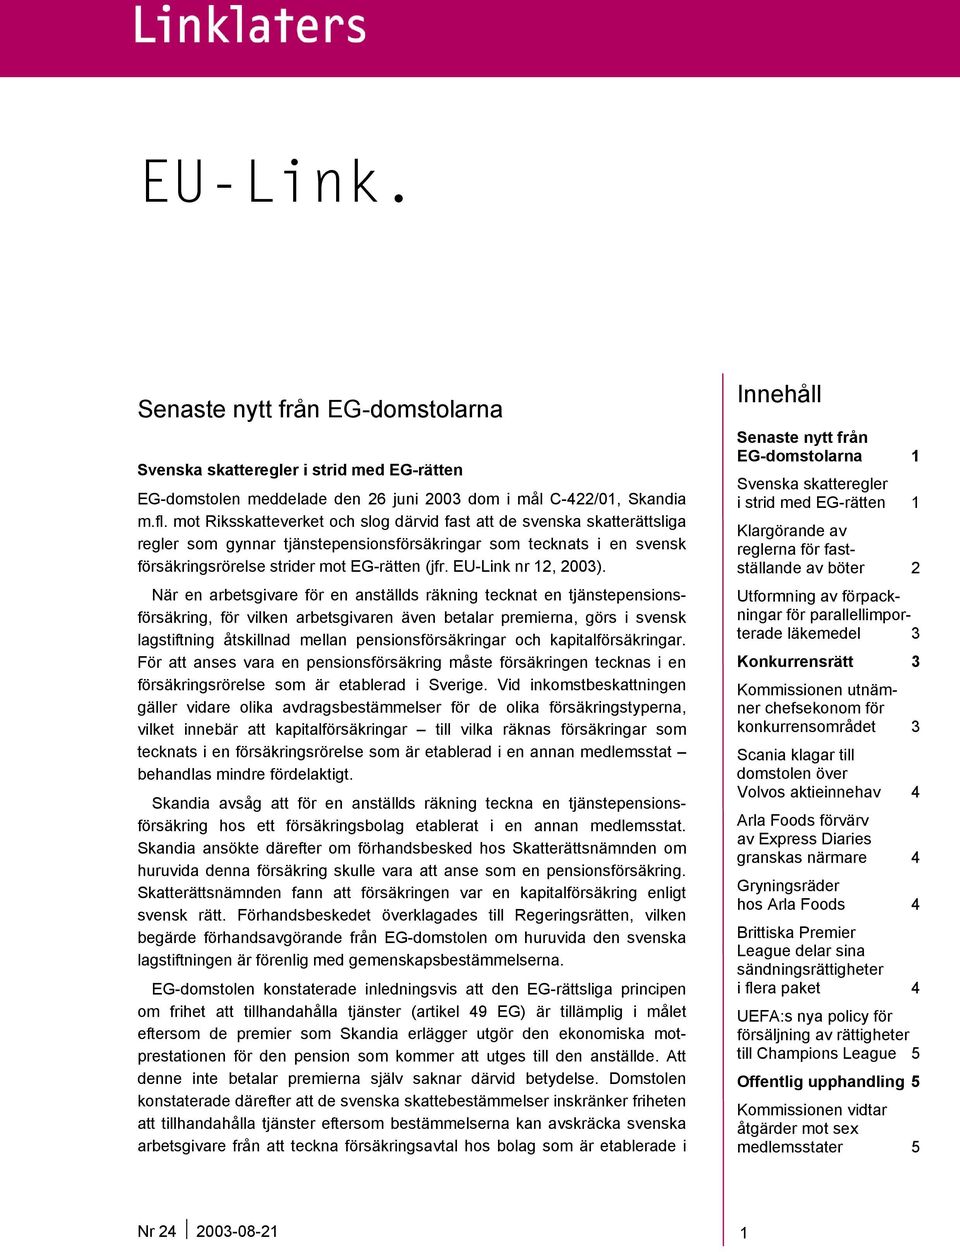 EU-Link nr 12, 2003).